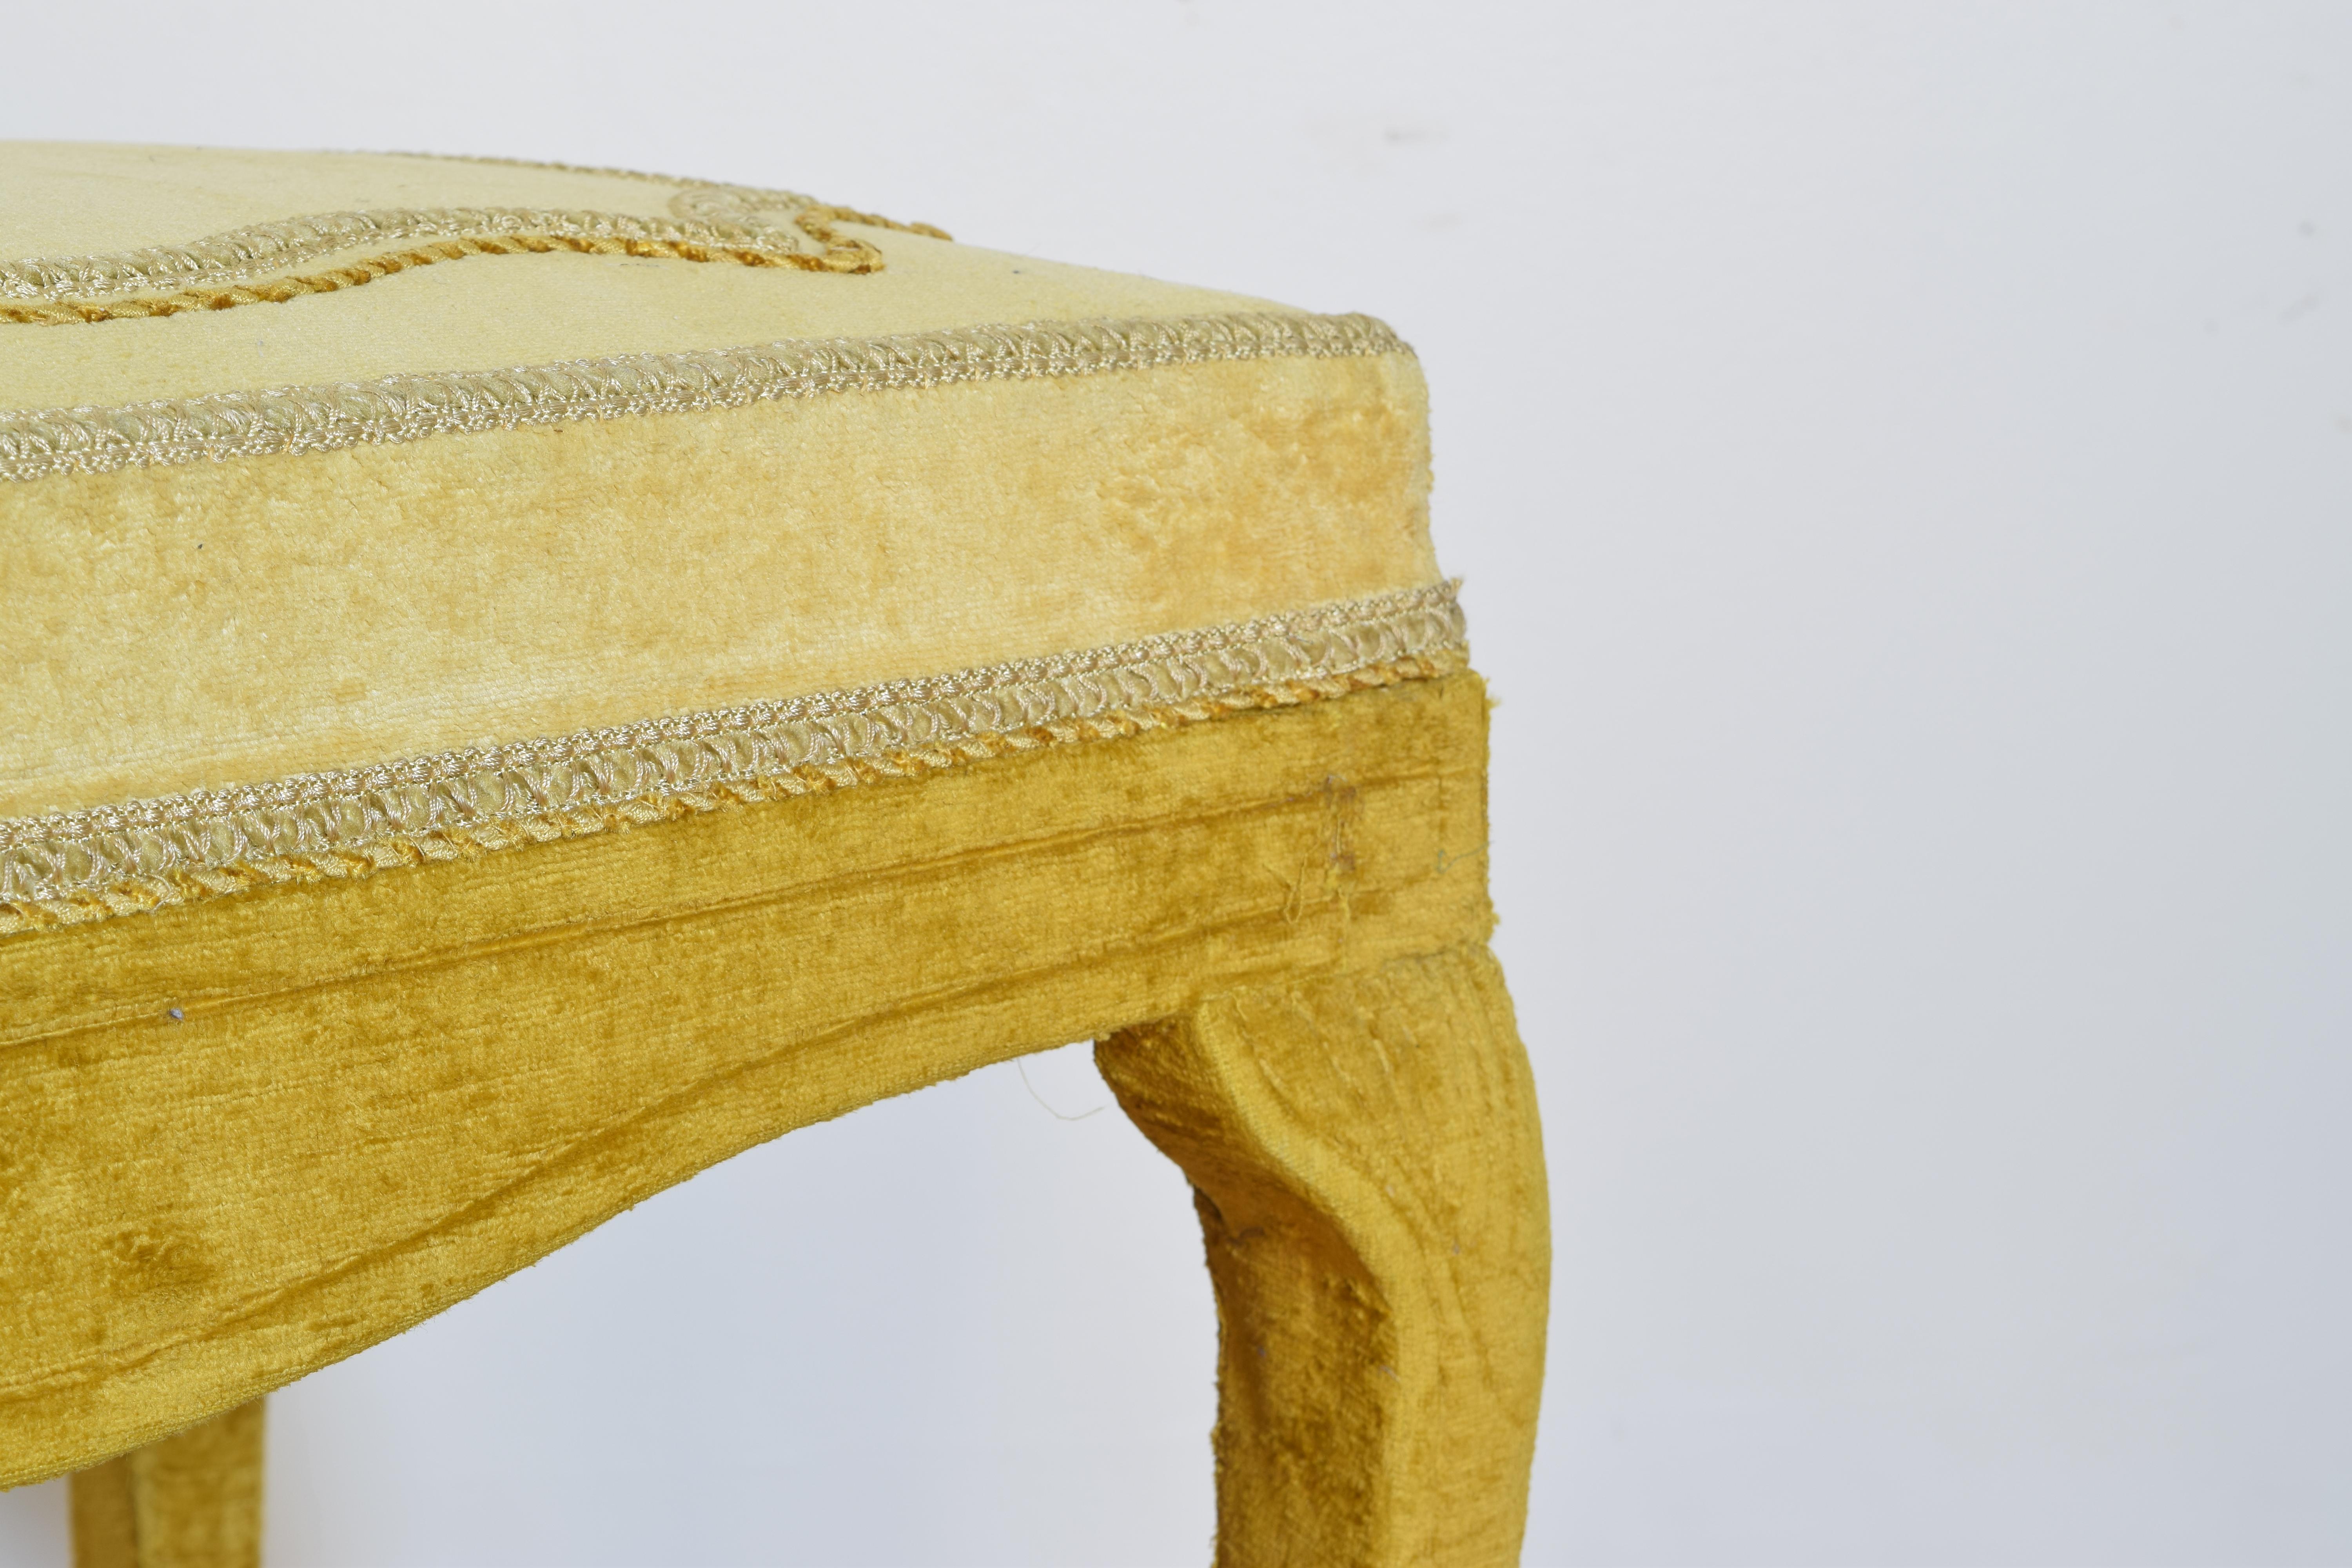 Italian Rococo Inspired Velvet Upholstered Bench, Early 20th Century (Frühes 20. Jahrhundert)